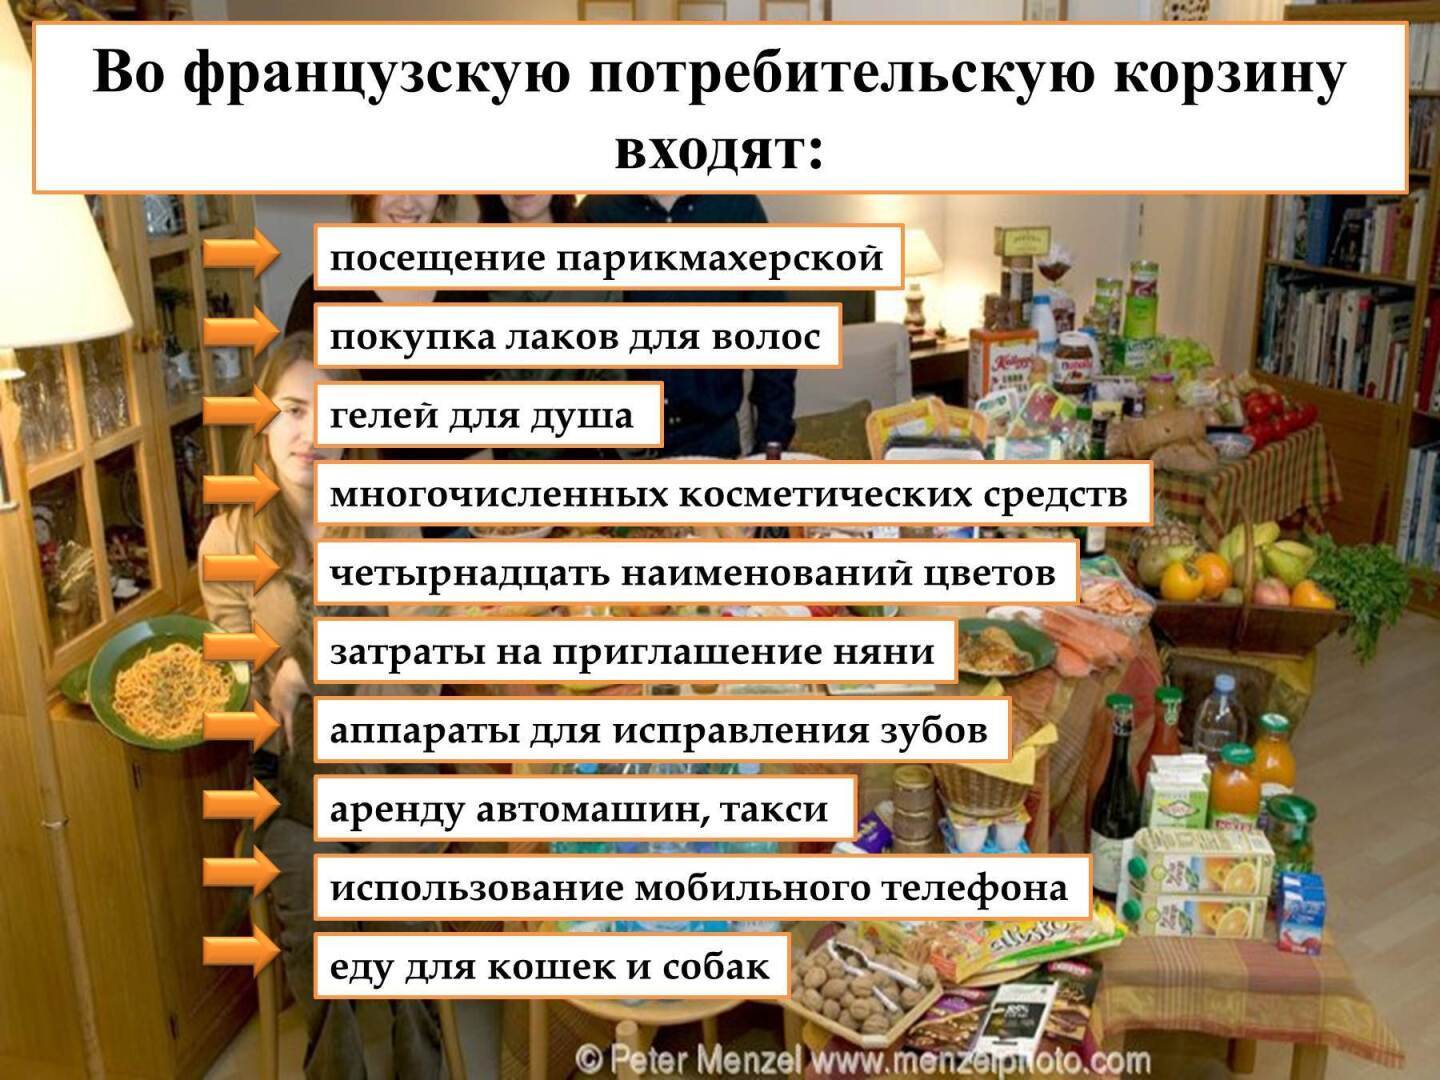 Границы бедности в России по новым правилам